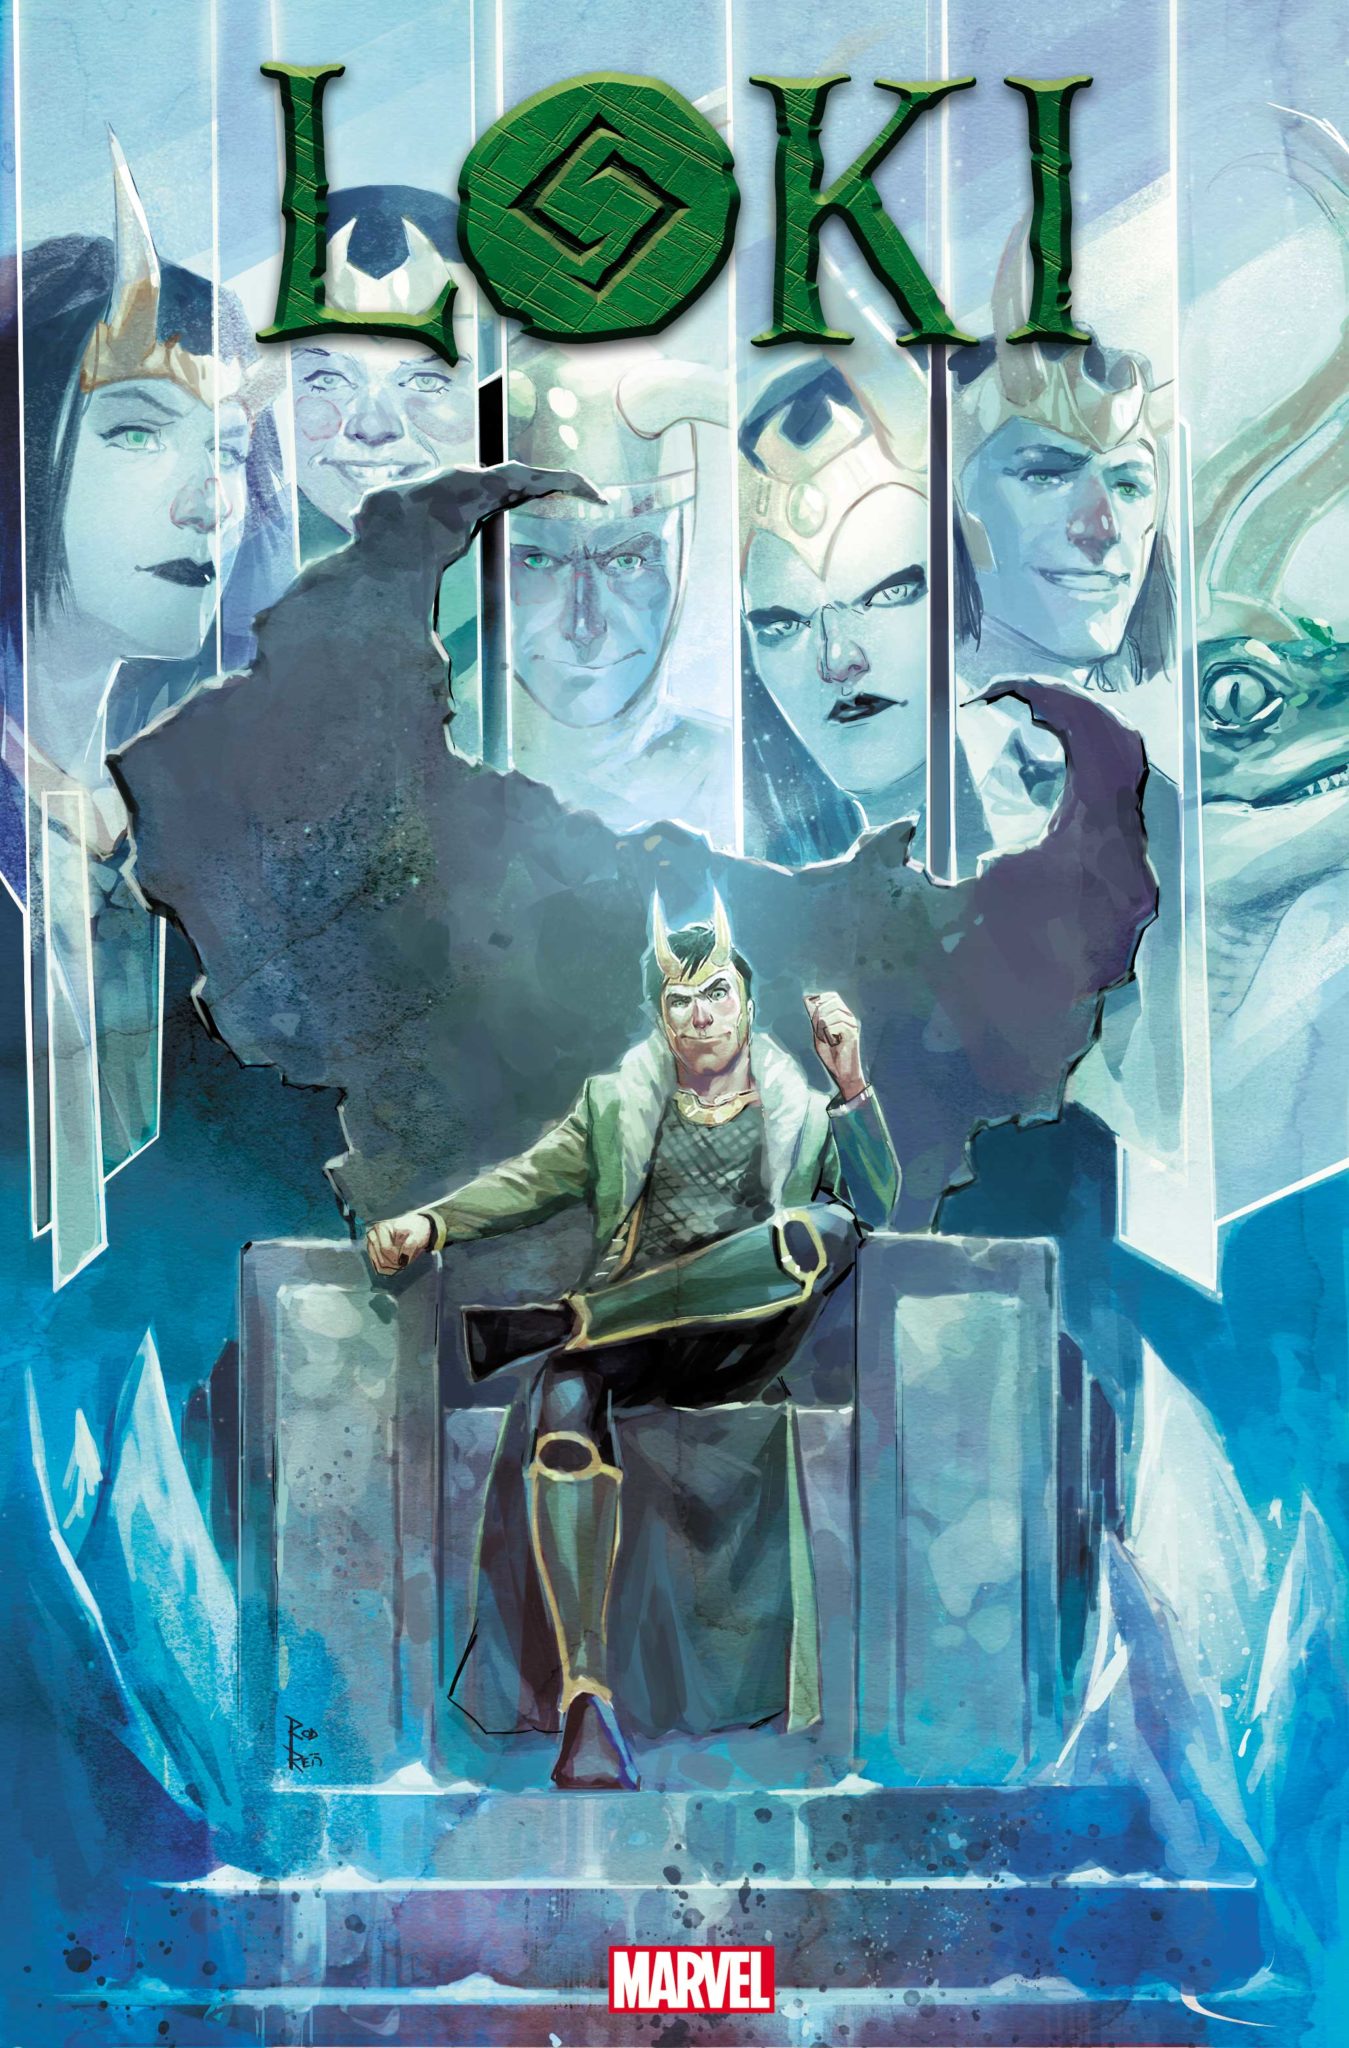 Loki #1 teaser cover featuring Loki and his famous alternate selves like Sylvie, Alligator Loki, and Old Man Loki